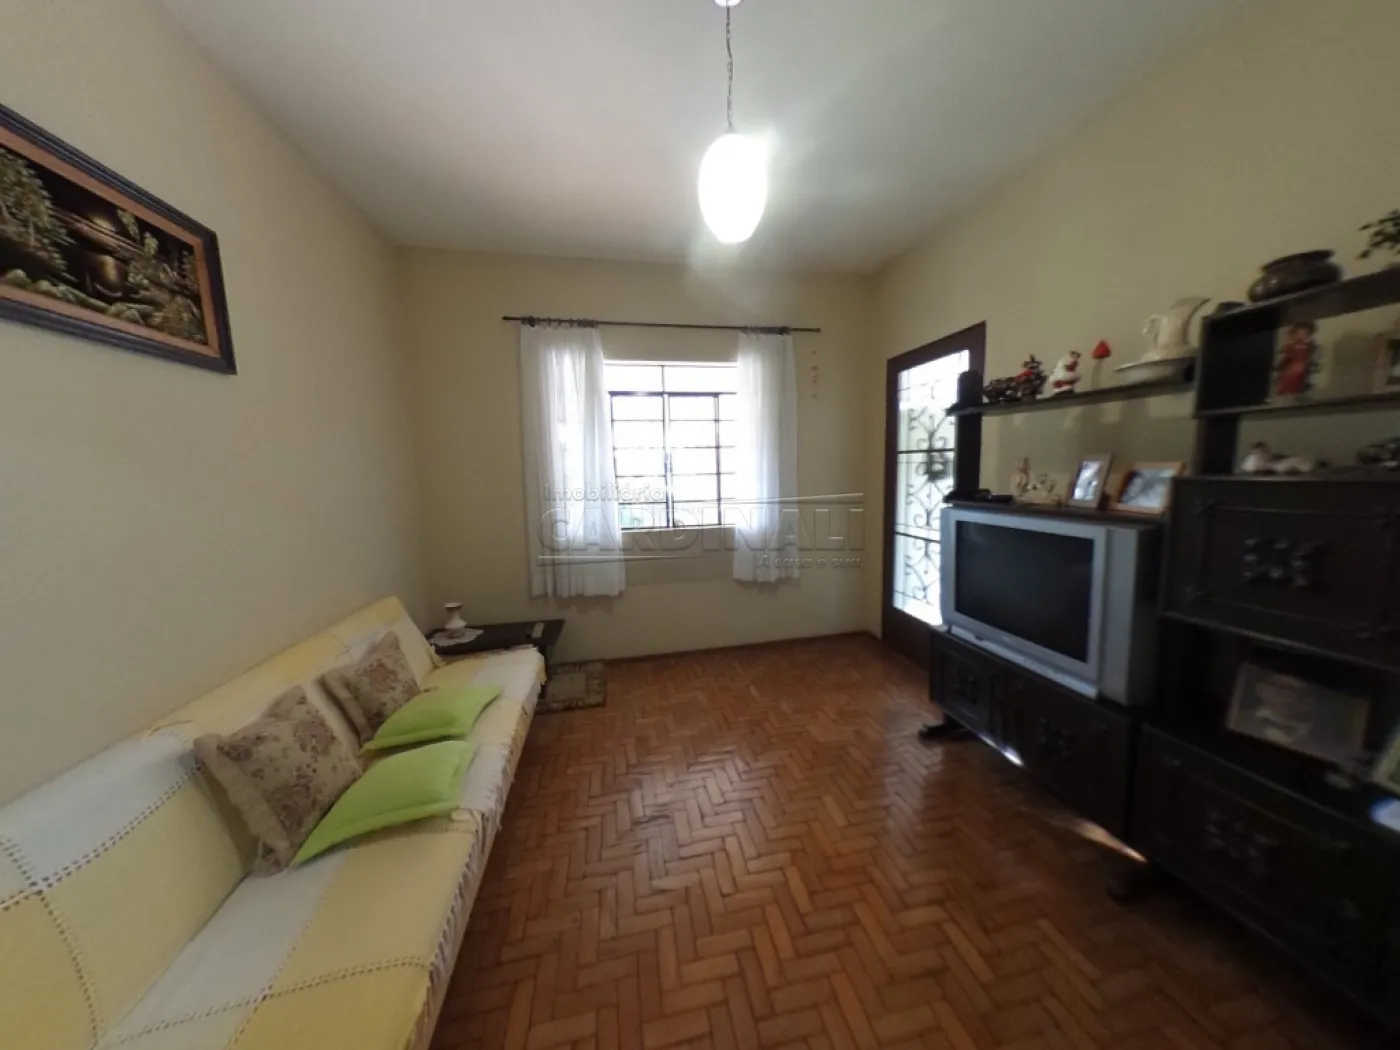 Alugar Casa / Padrão em São Carlos R$ 1.445,00 - Foto 2